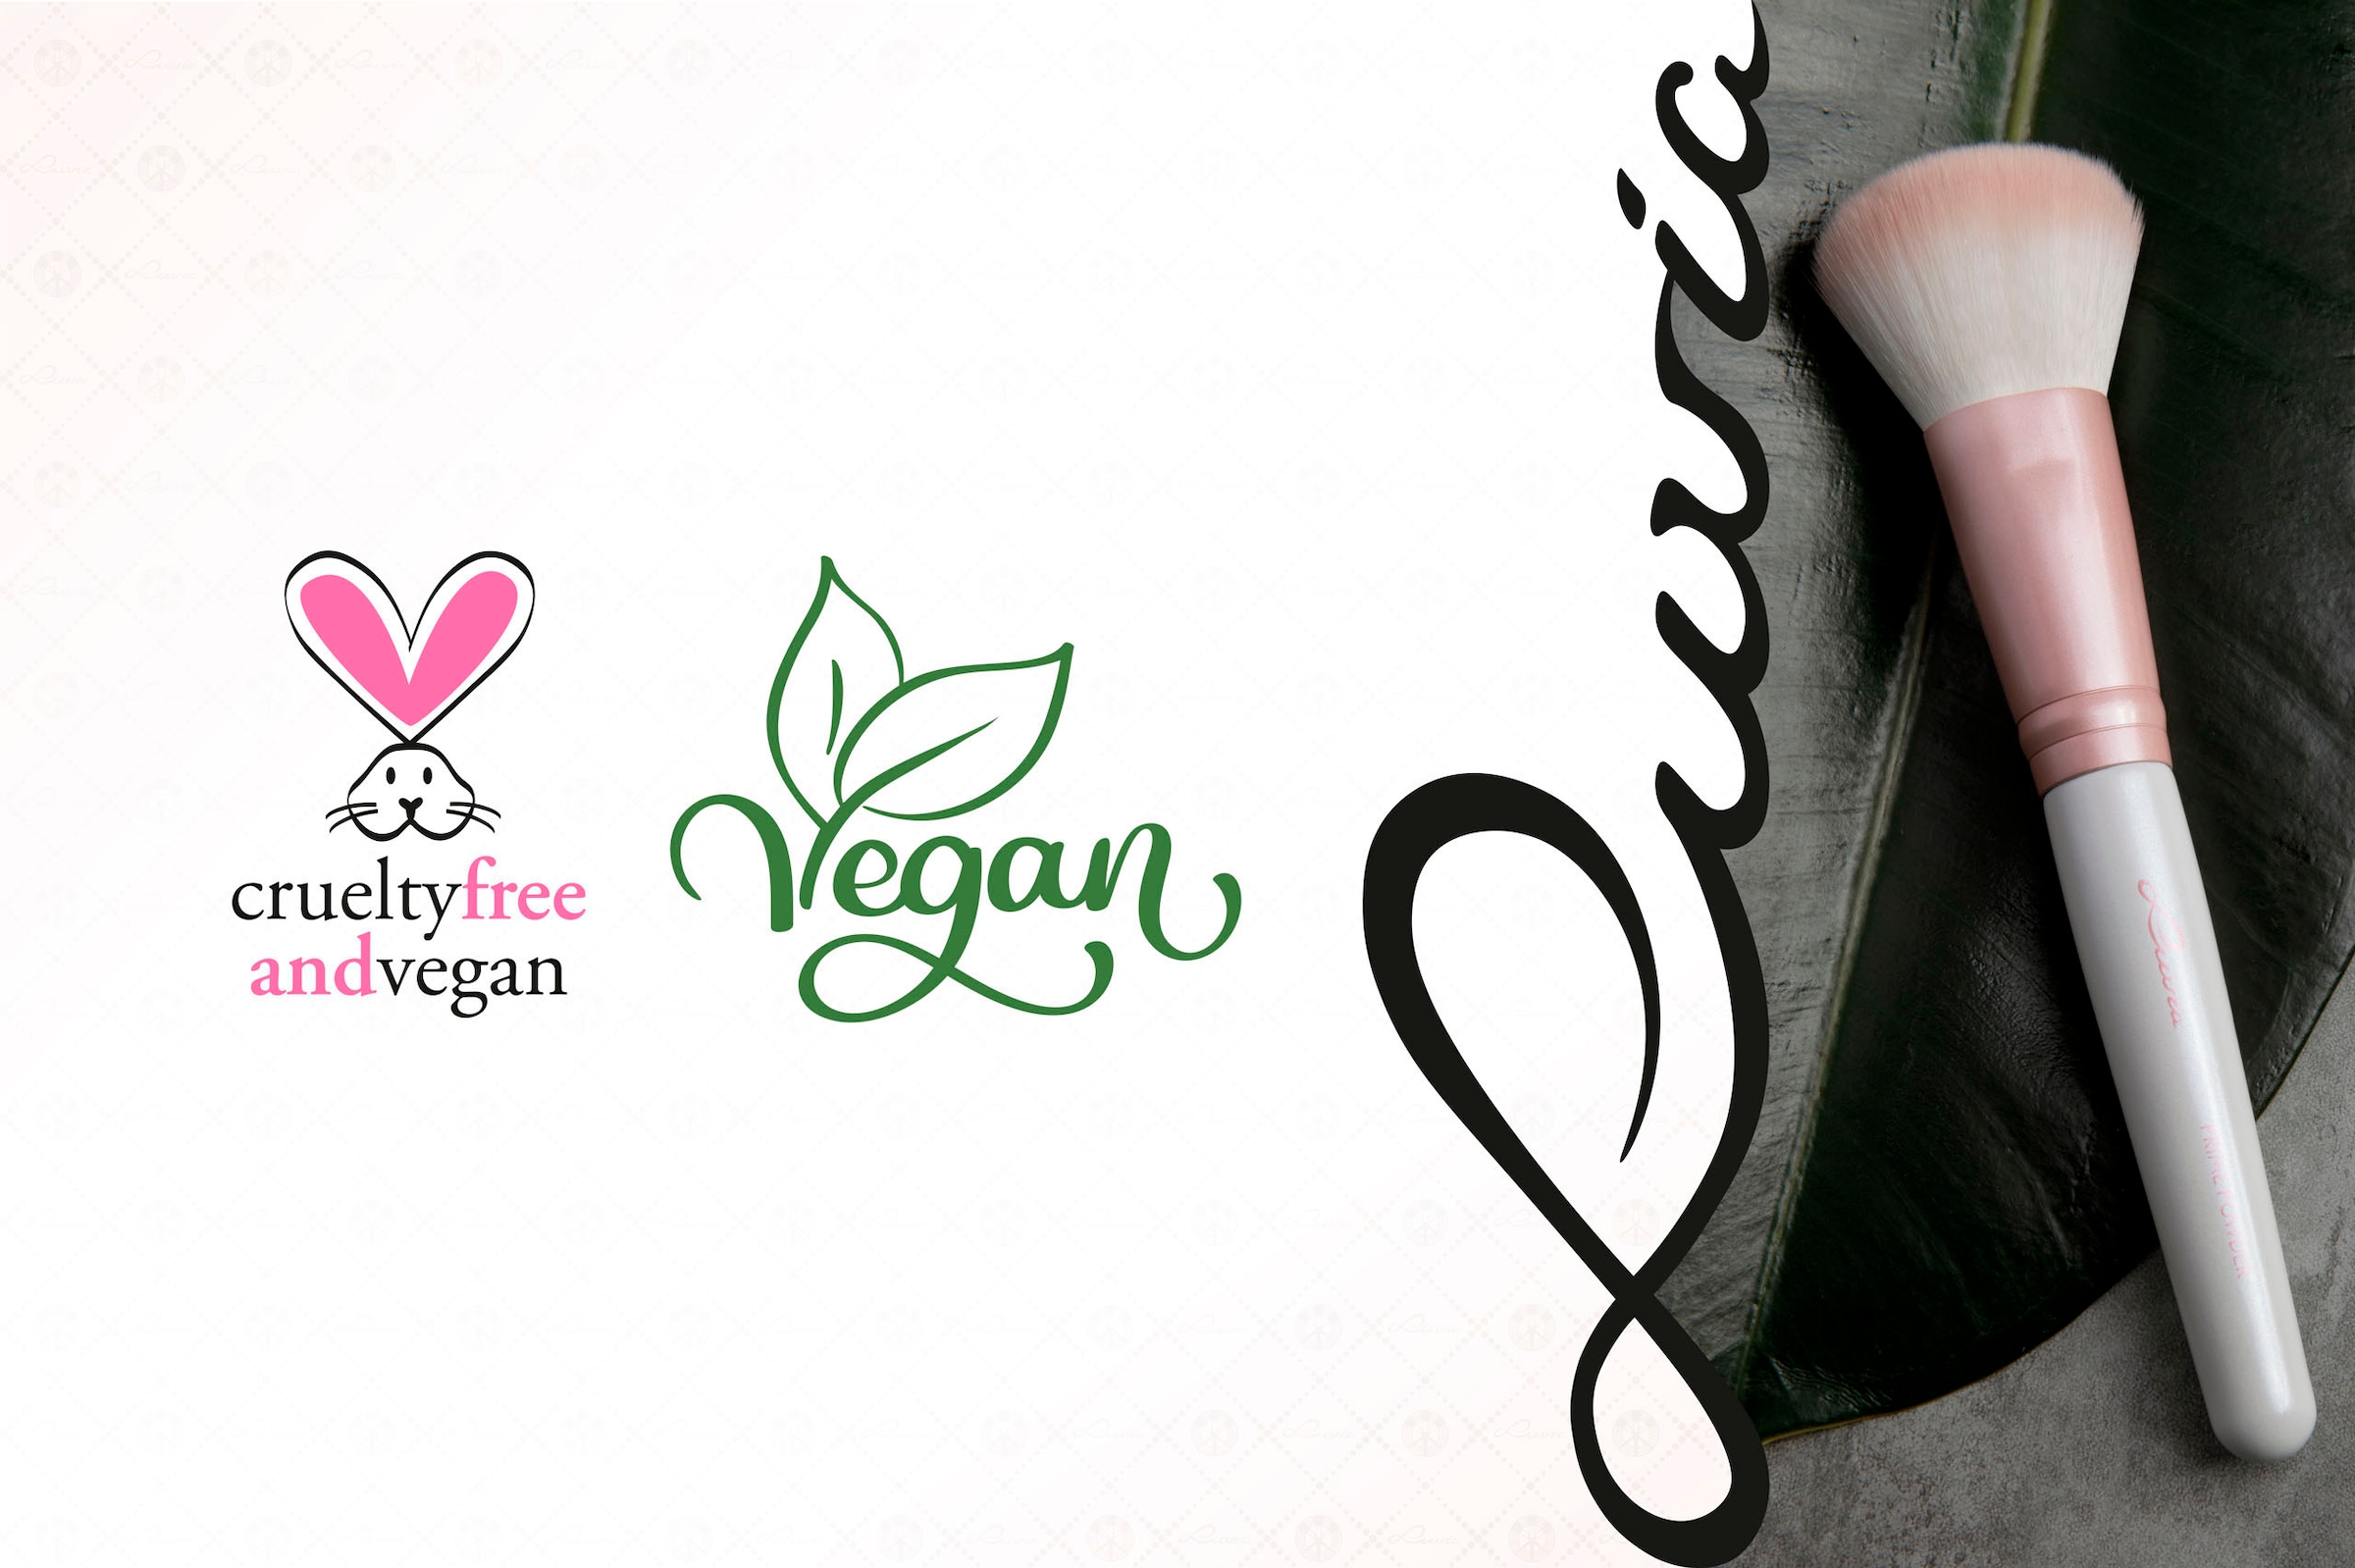 Luvia Cosmetics Kosmetikpinsel-Set »Prime Vegan Candy«, (10 tlg.) kaufen  online bei OTTO